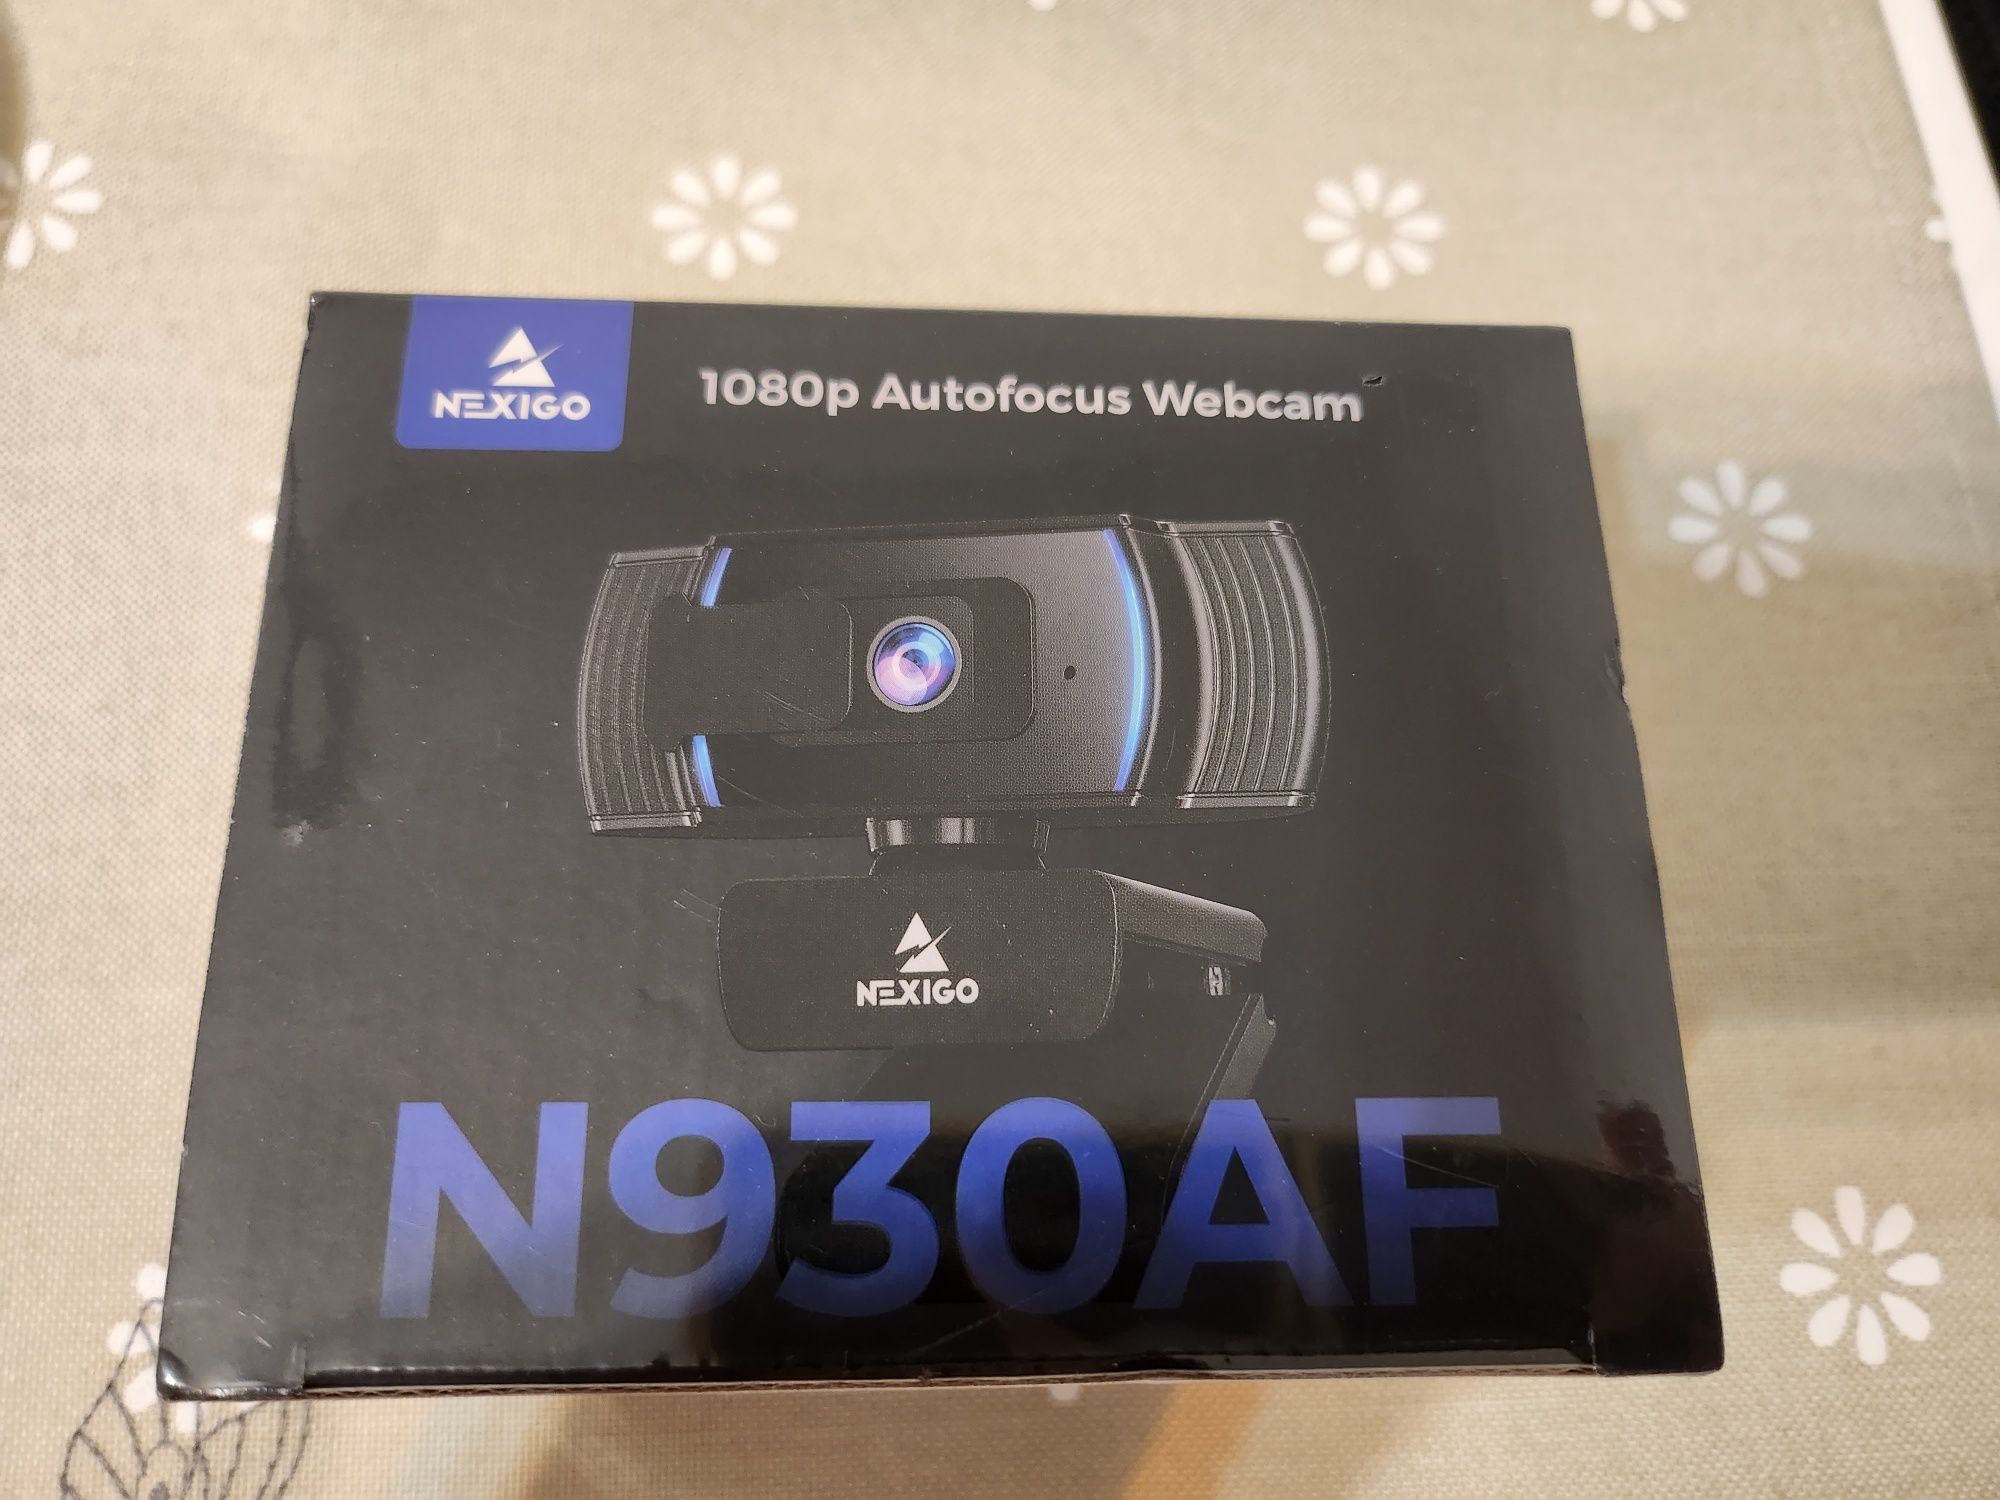 NexiGo N930AF AutoFocus kamera internetowa z mikrofonem stereo, sterow